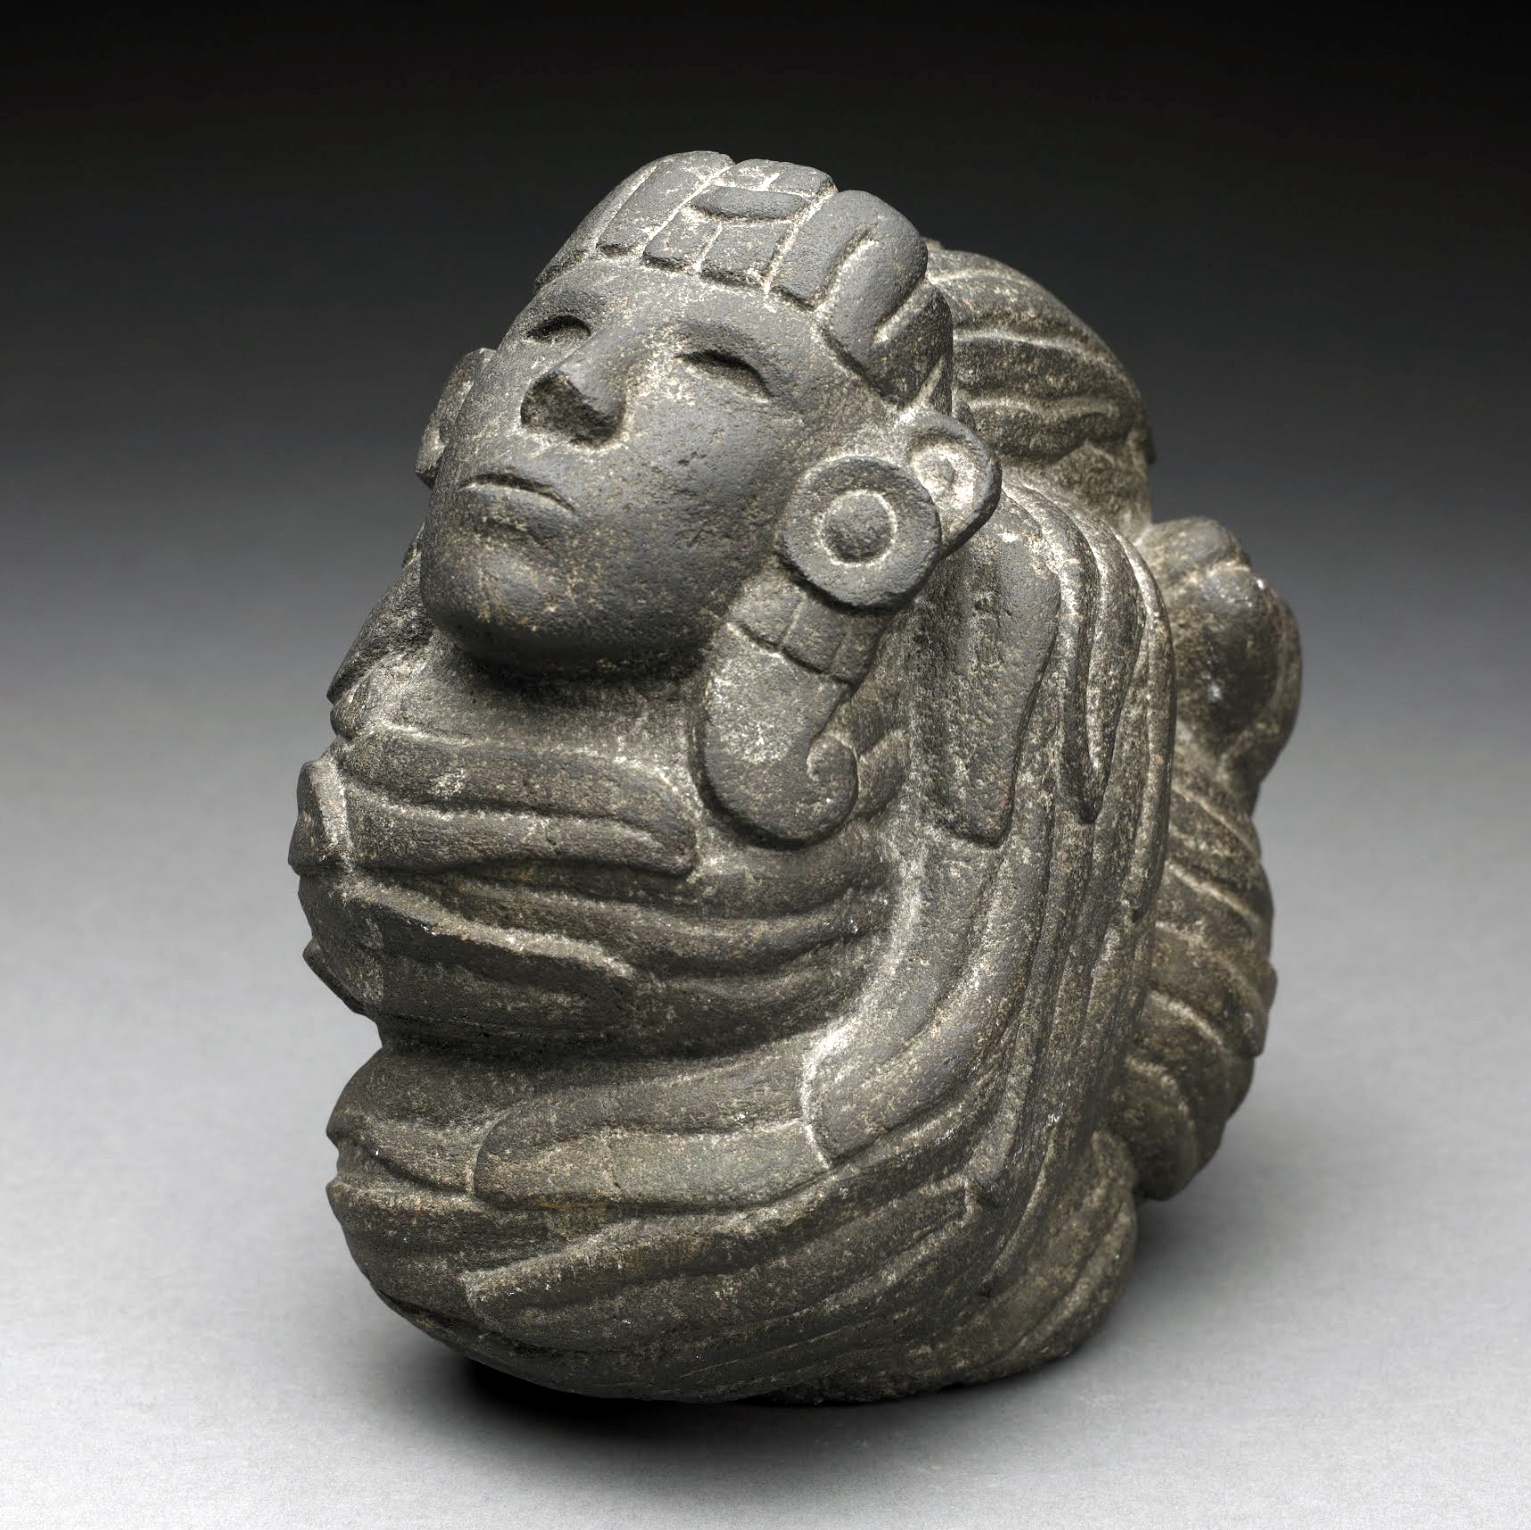 Пернатый змей с головой человека. Ацтеки, 1325-1521 гг. н.э. Коллекция Birmingham Museum of Art.